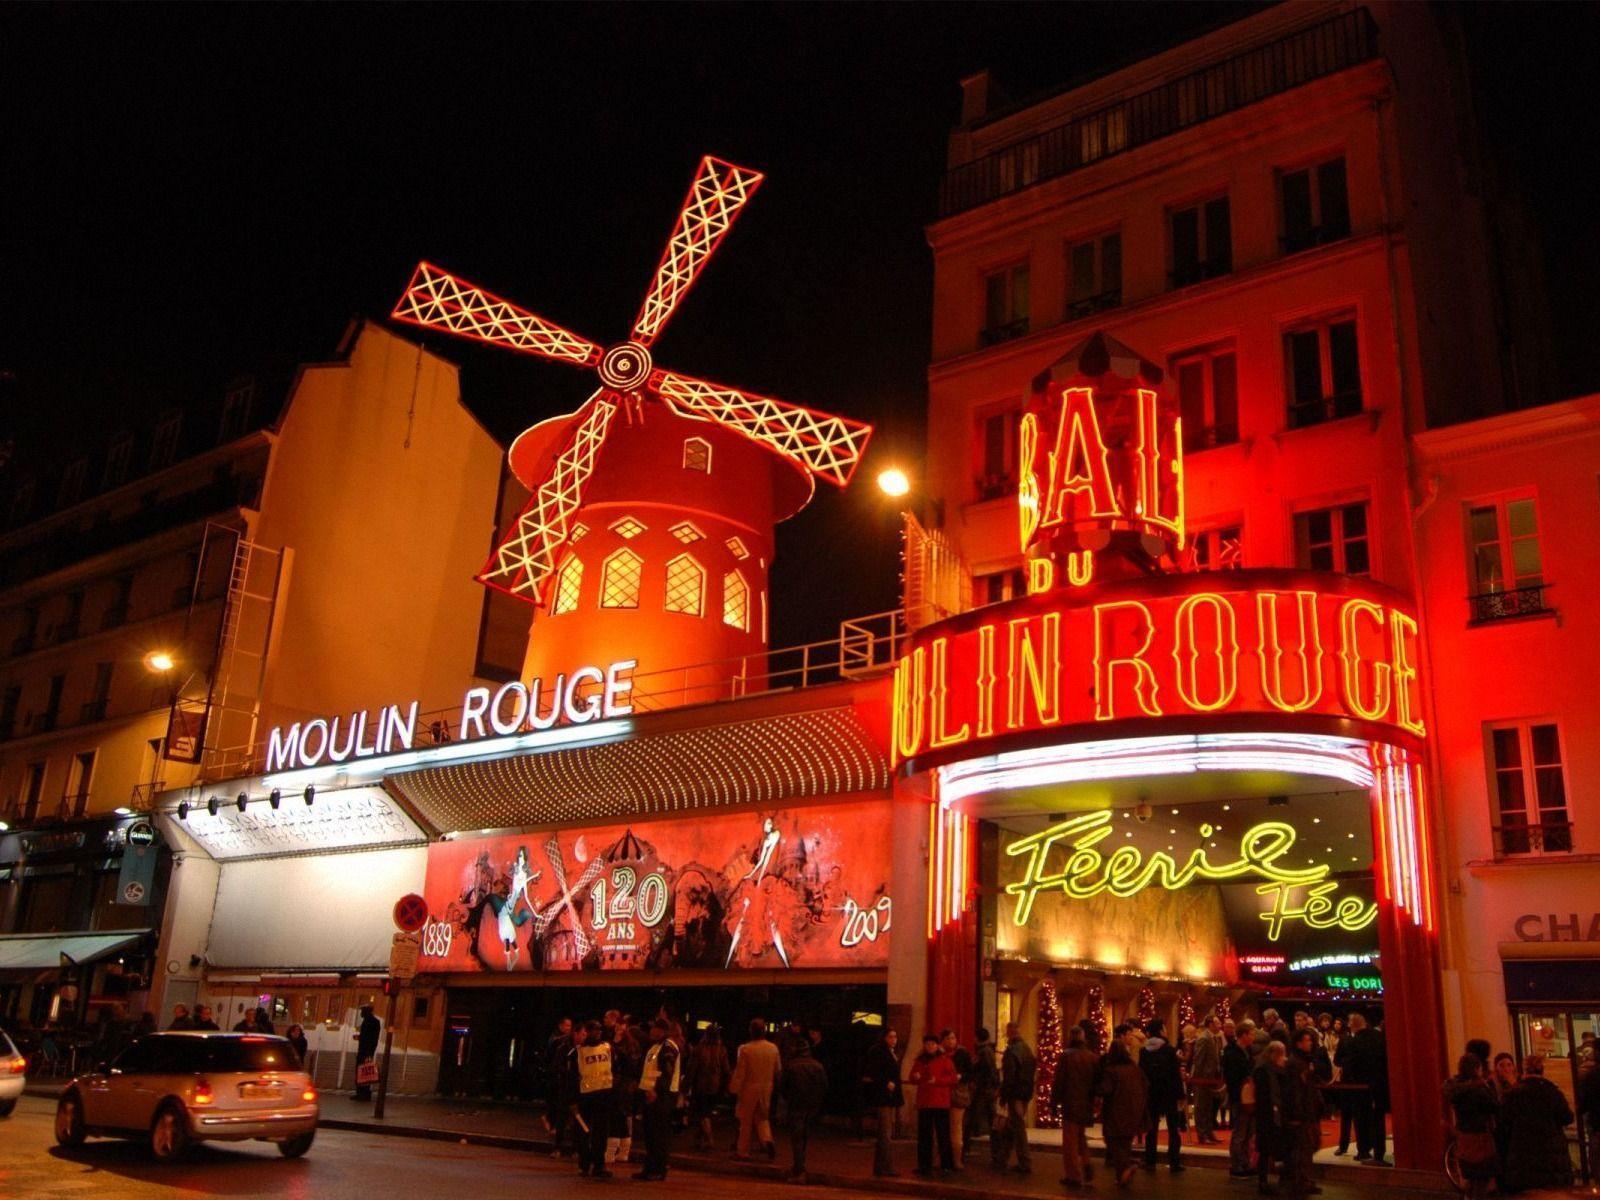 Moulin Rouge Paris wallpaper. Moulin Rouge Paris